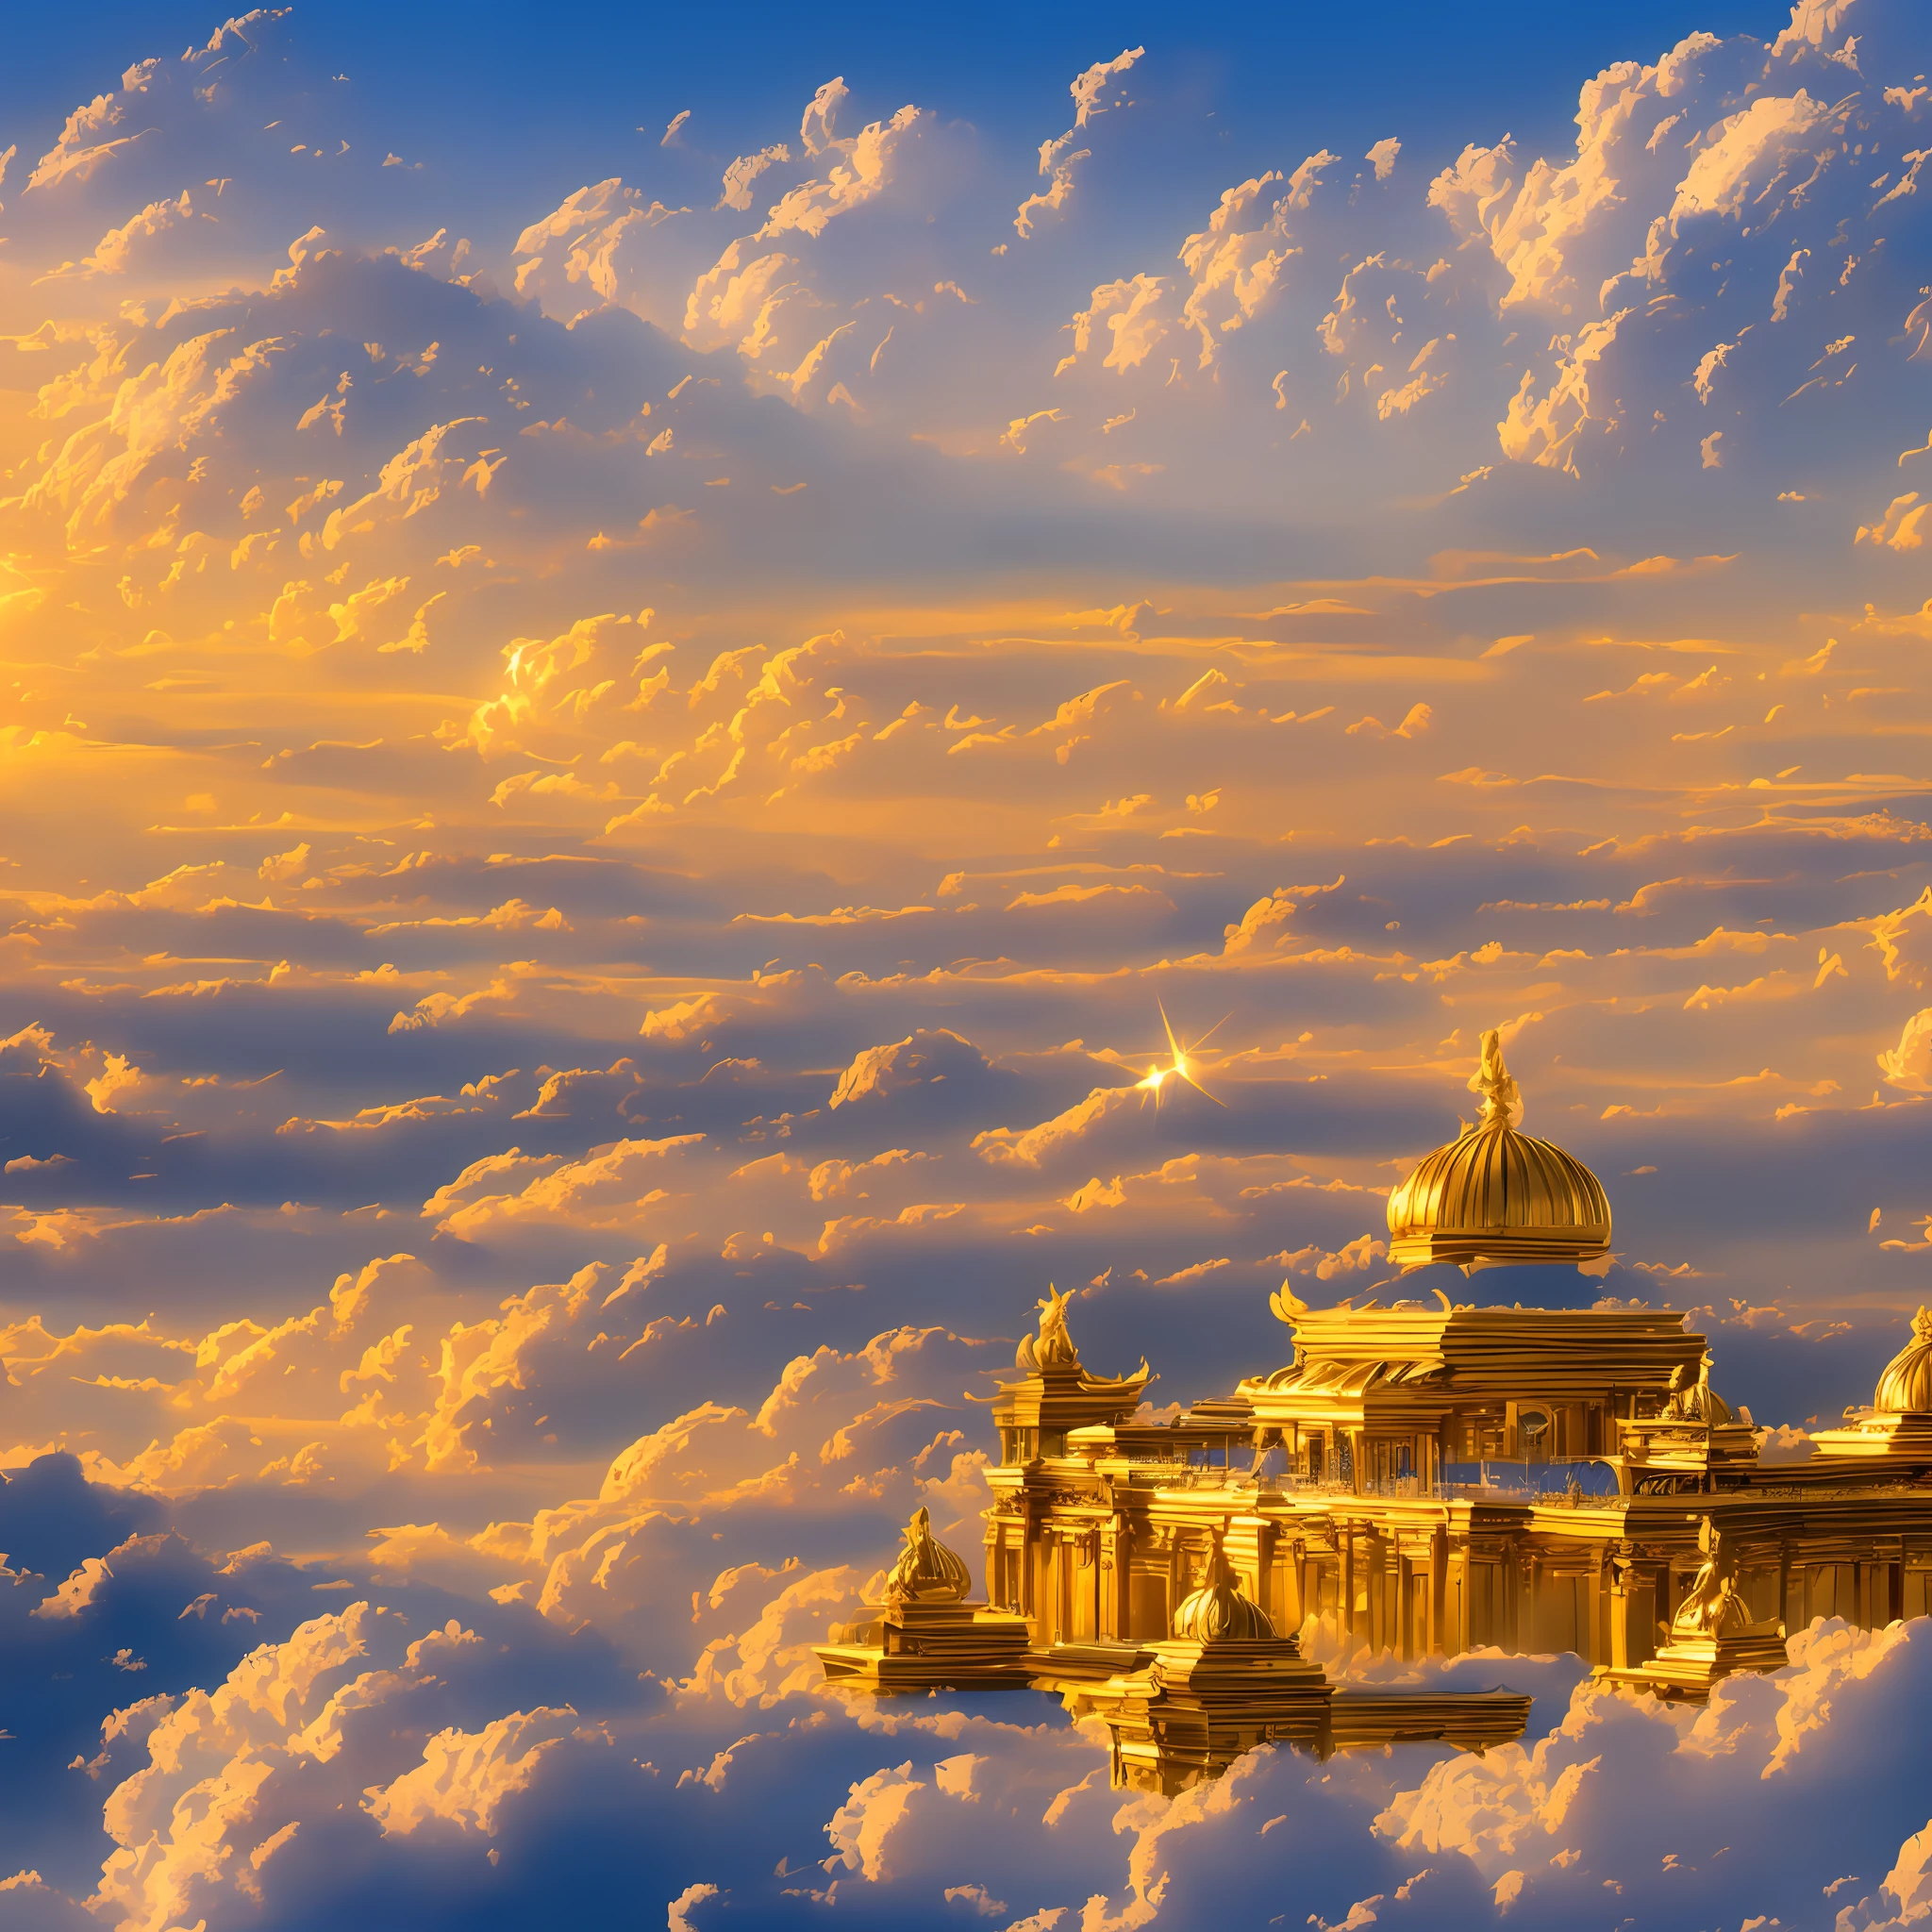 雲の中の聖地, 天空に浮かぶ雄大な宮殿, 白い大理石の宮殿, 黄金の神聖な雲, 夕暮れのオレンジと金色の空, 天使のような雲, 非常に詳細な漫画の痕跡, 見事な眺め --auto --s2